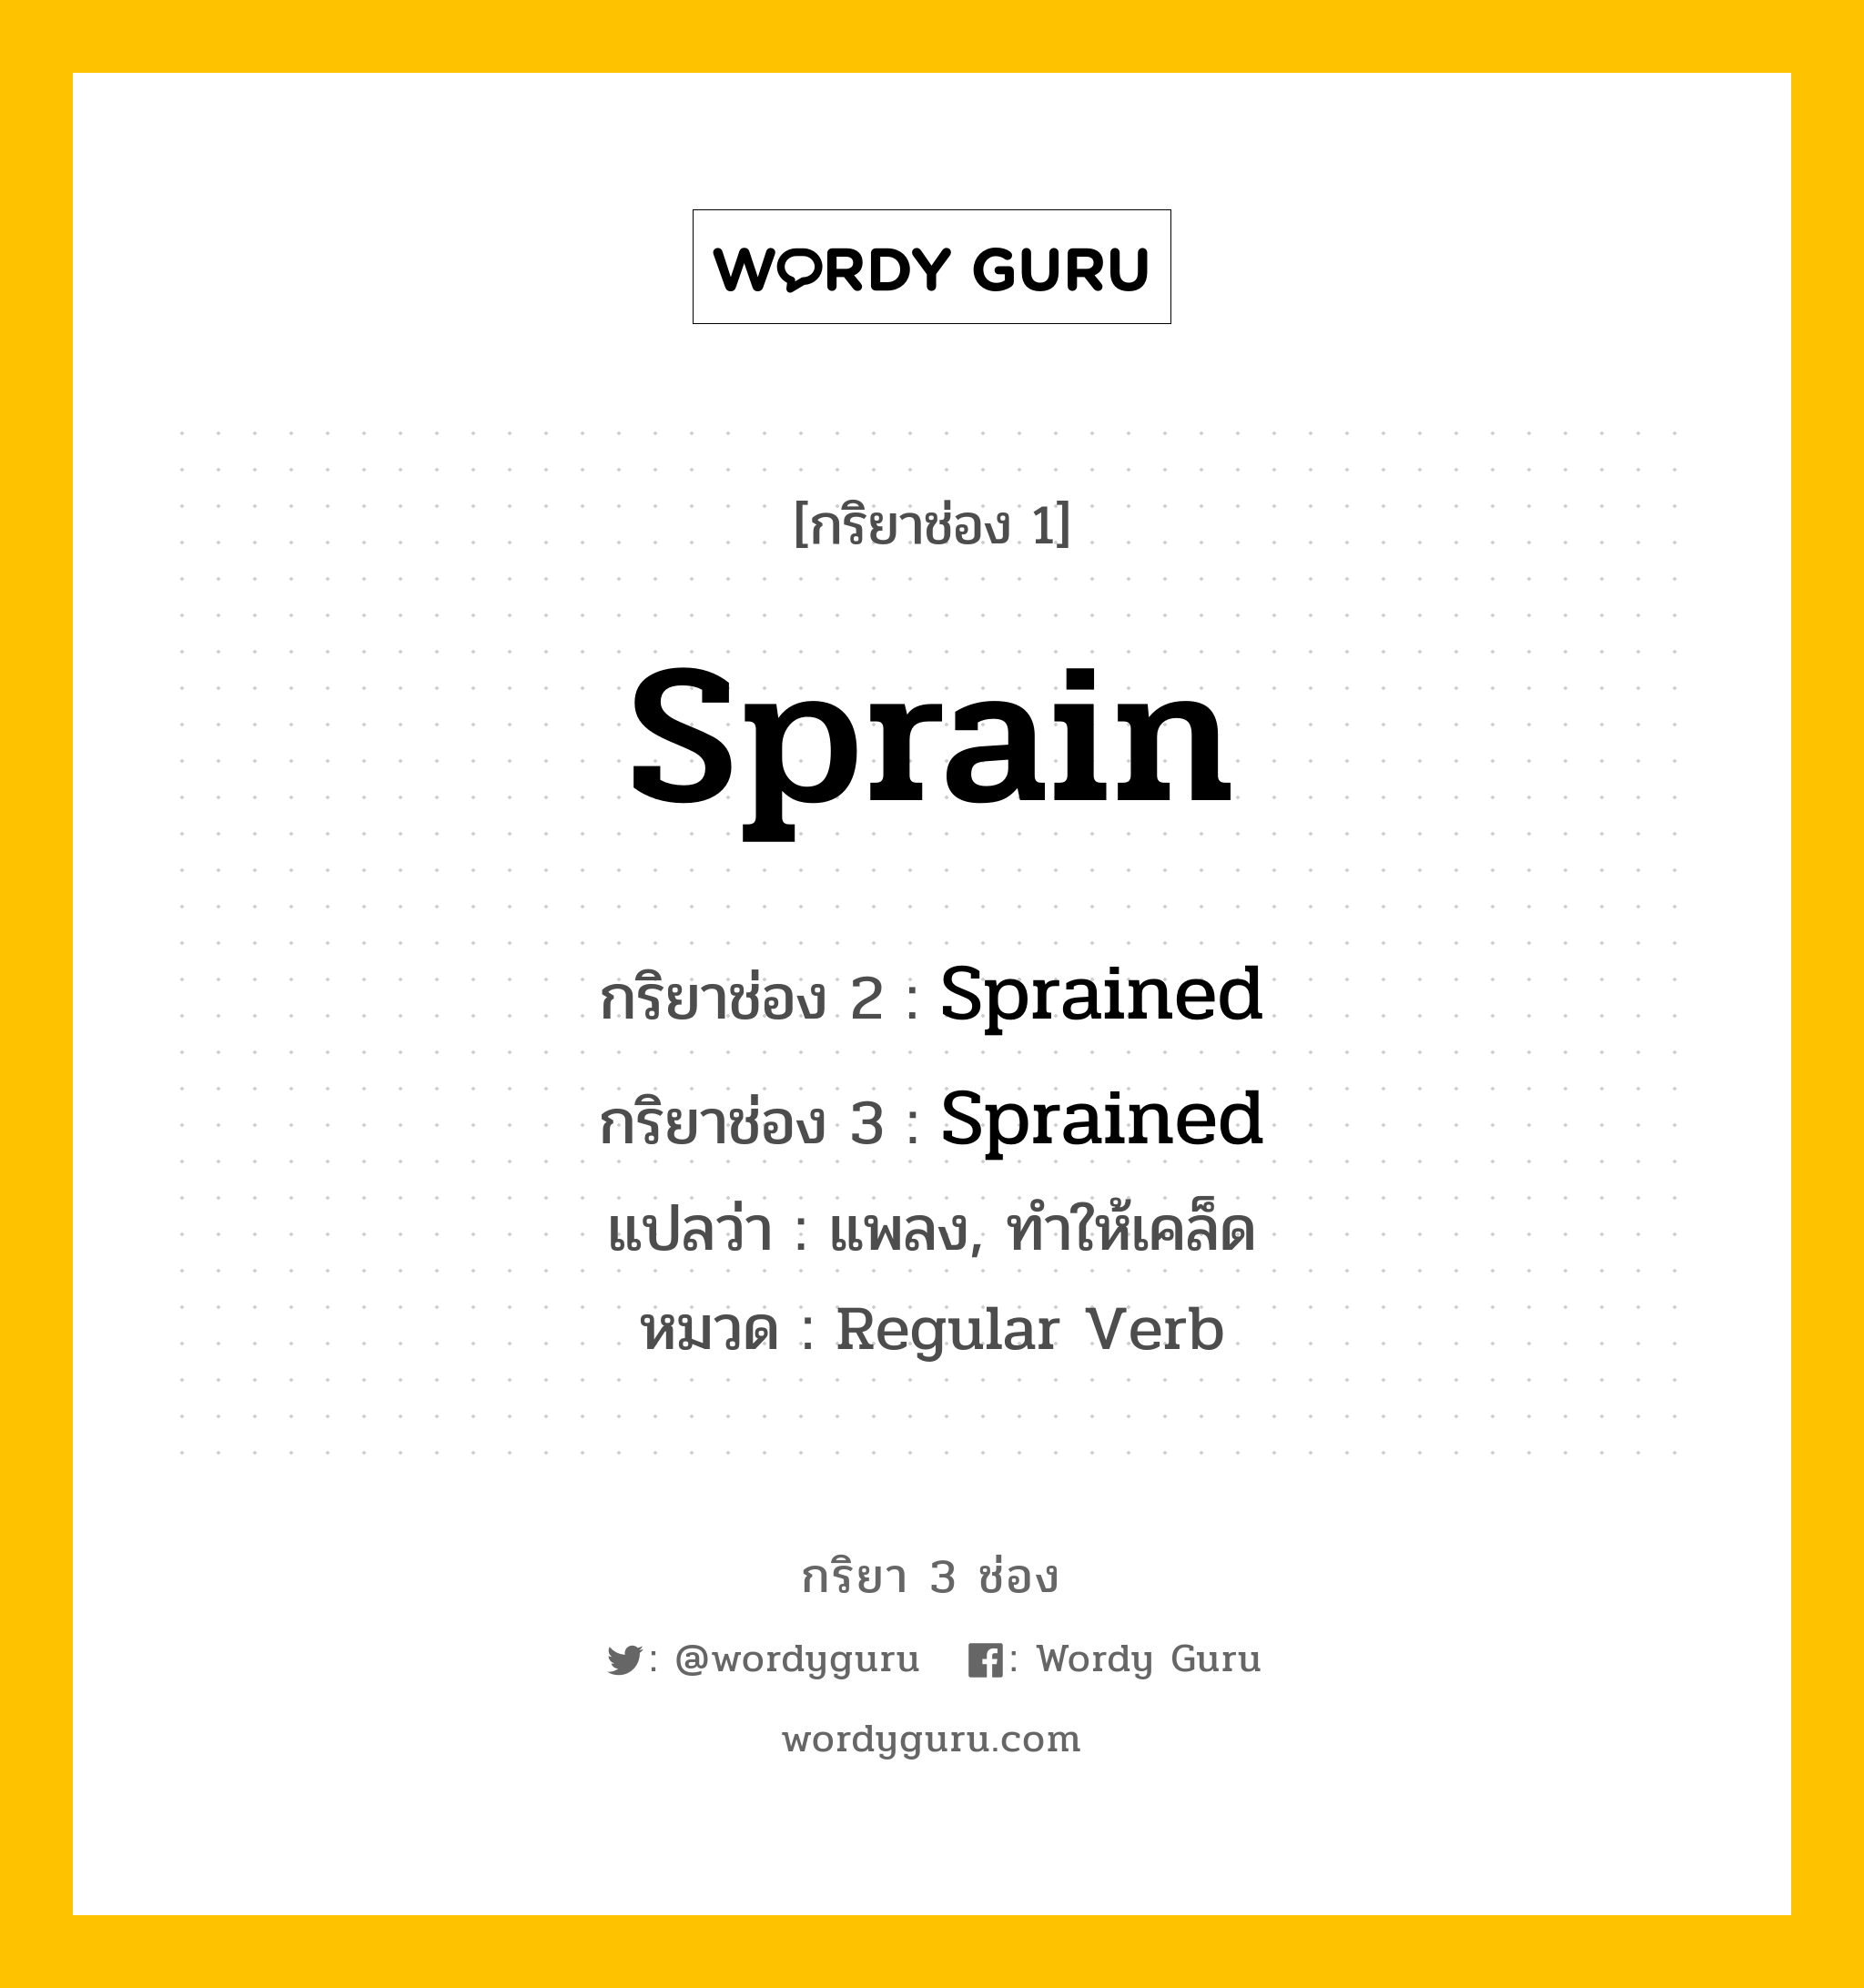 กริยา 3 ช่อง ของ Sprain คืออะไร? มาดูคำอ่าน คำแปลกันเลย, กริยาช่อง 1 Sprain กริยาช่อง 2 Sprained กริยาช่อง 3 Sprained แปลว่า แพลง, ทำให้เคล็ด หมวด Regular Verb หมวด Regular Verb